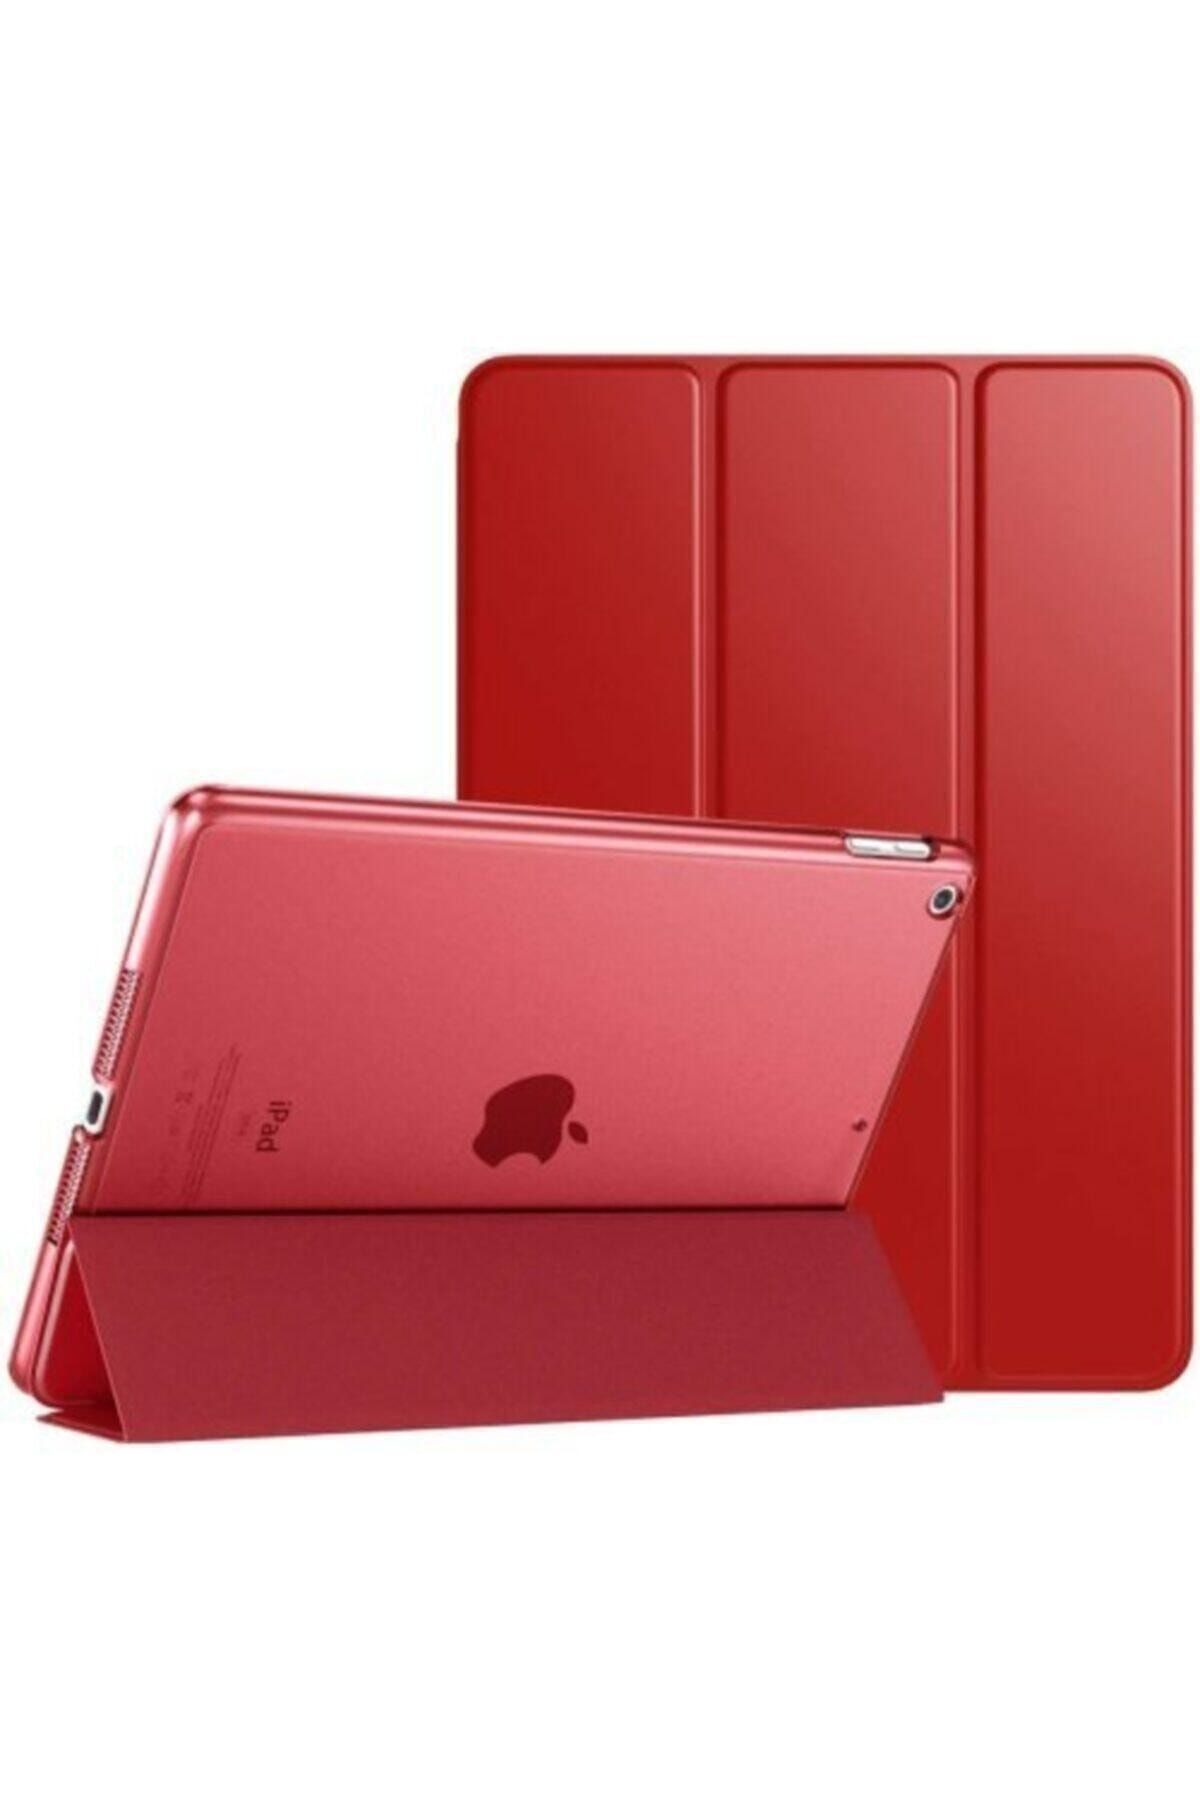 Teknoloji Gelsin Apple Ipad 8. Nesil 10.2 Inç Stand Tablet Flip Standlı Akıllı Kılıf Smart Cover 10.2" - Kırmızı -